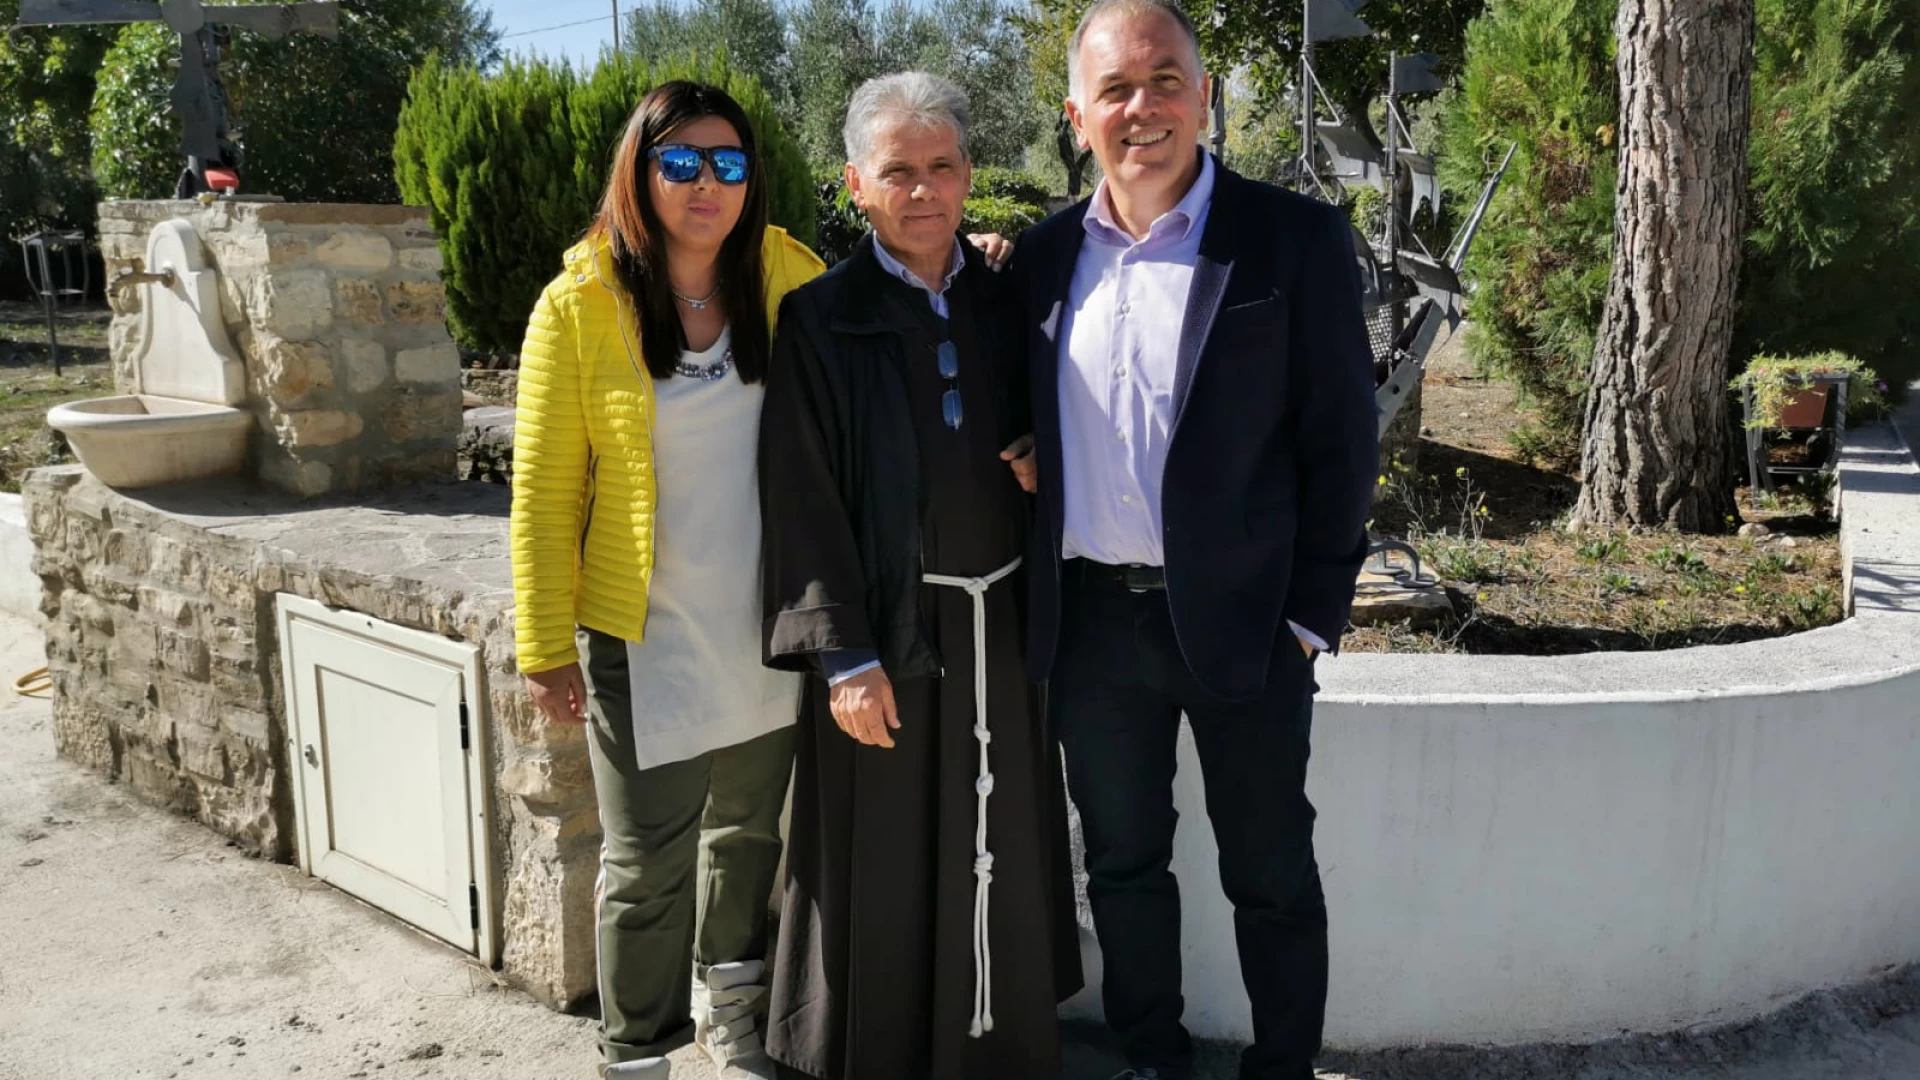 Paola Matteo e Gianluca Cefaratti in visita alla comunità ‘Il girasole’ di Rotello  “Droga minaccia per tutti, grande il lavoro della Comunità Terapeutica Molise”